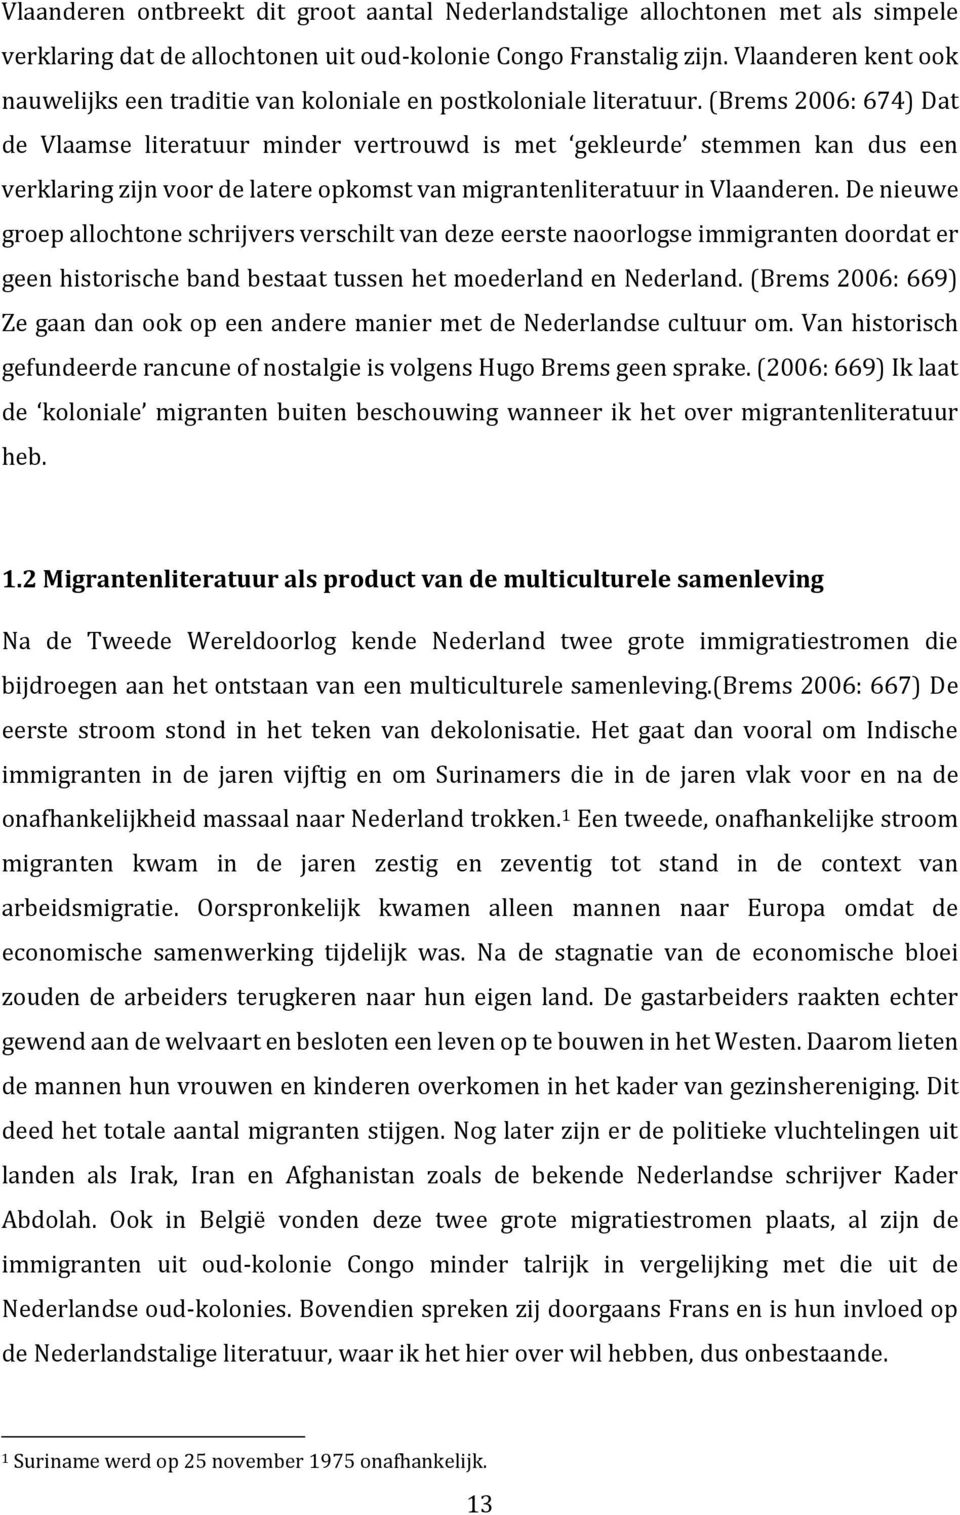 (Brems 2006: 674) Dat de Vlaamse literatuur minder vertrouwd is met gekleurde stemmen kan dus een verklaring zijn voor de latere opkomst van migrantenliteratuur in Vlaanderen.